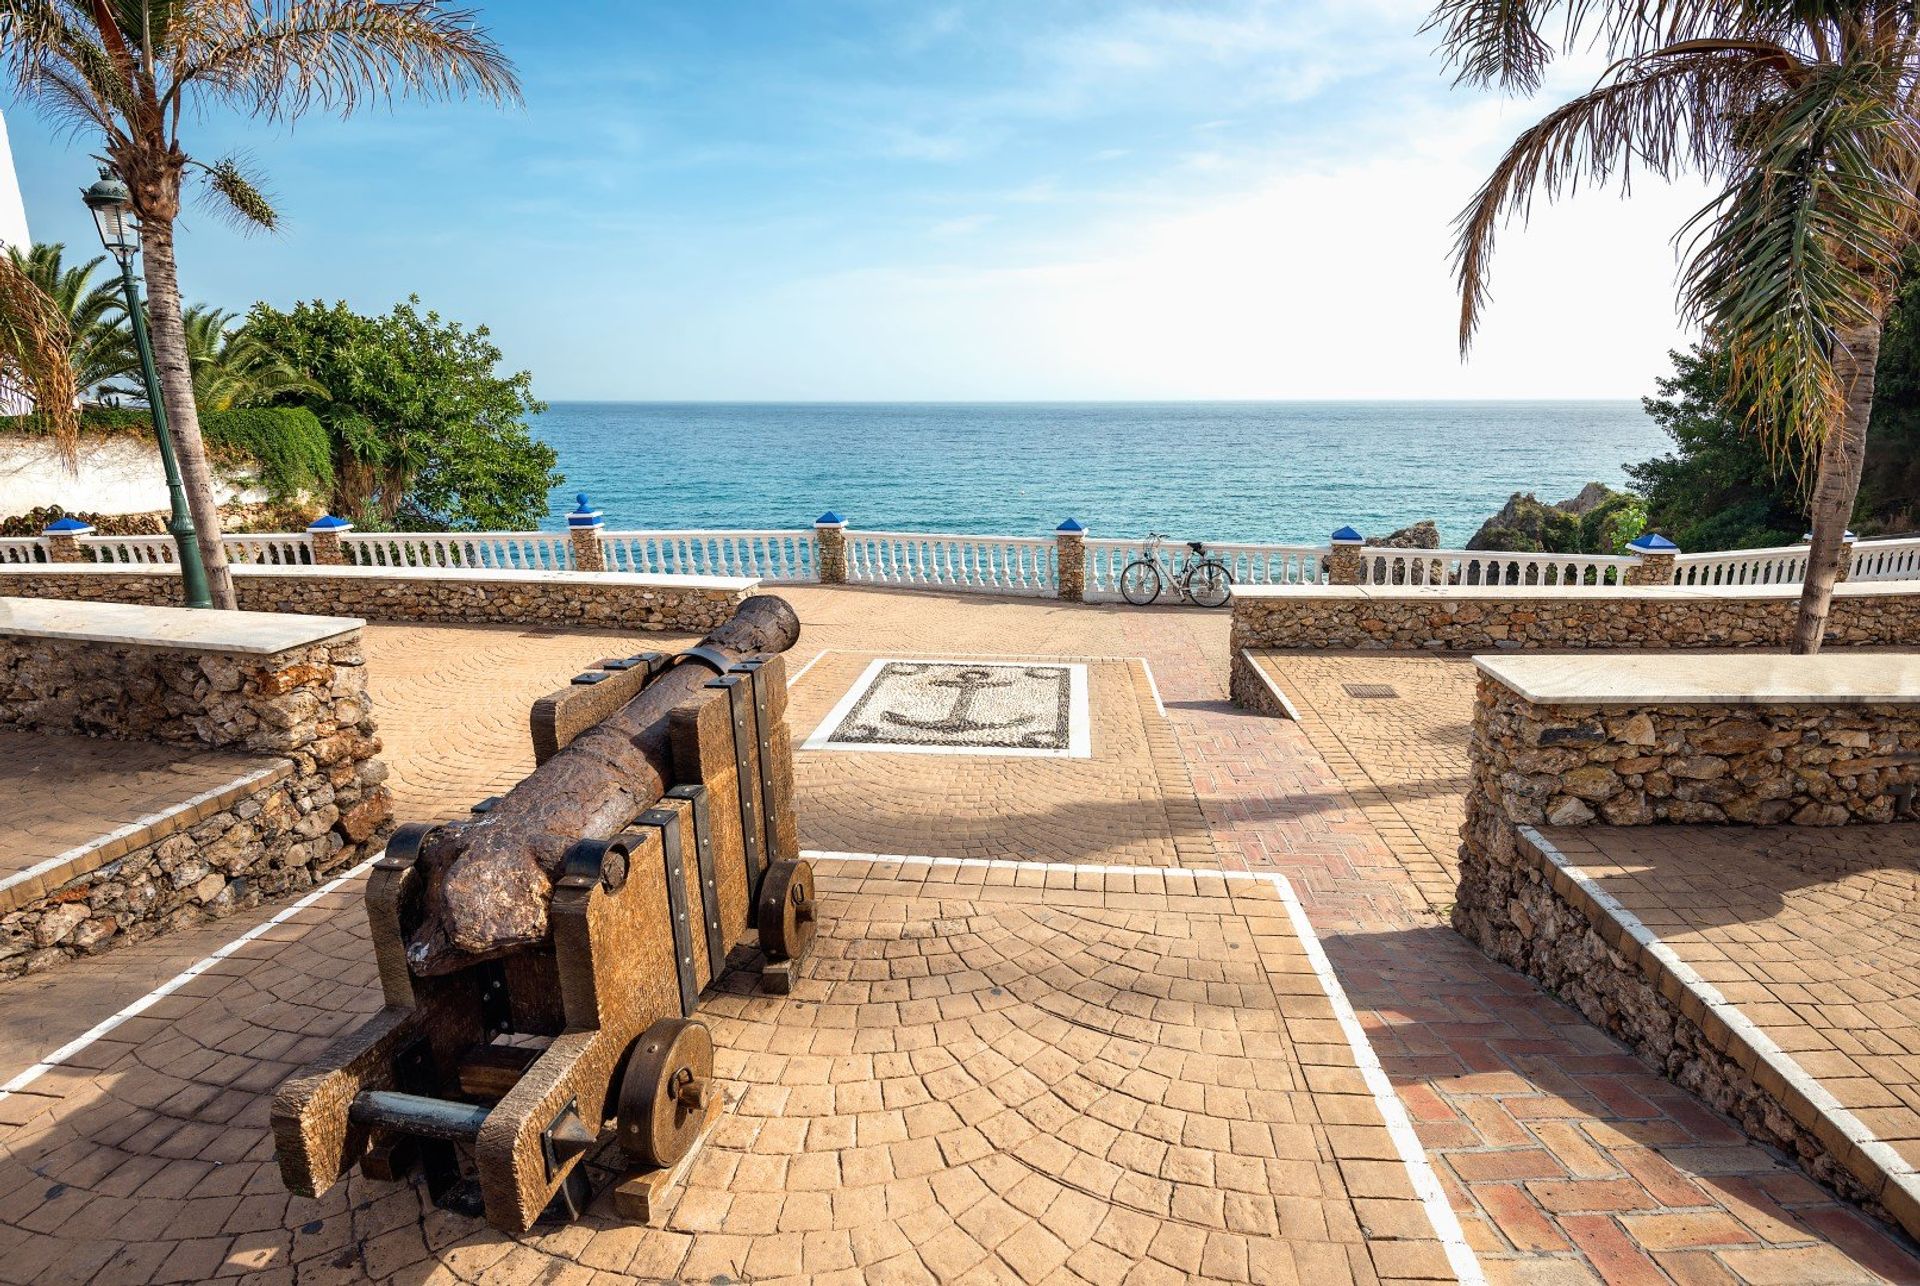 Coastal views with the ancient cannon on local Carabeillo beach by the Balcón de Europa